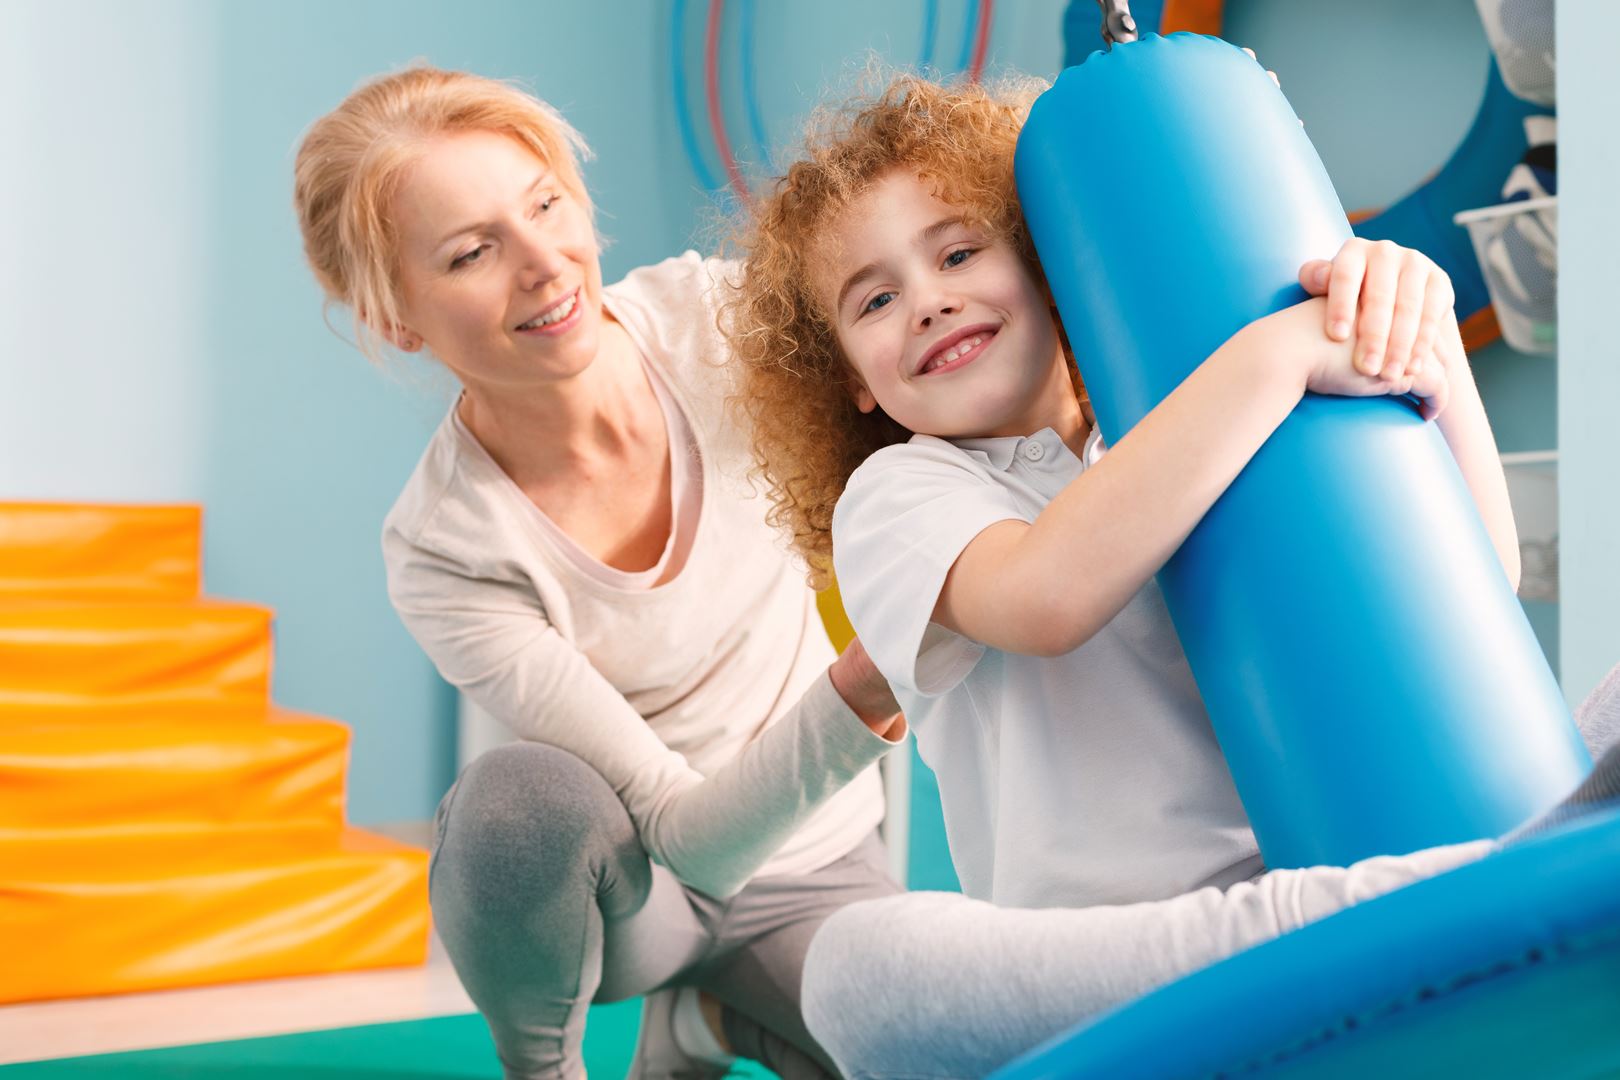 פיזיותרפיה לילדים עם אוטיזם - Junior Therapy, מספקים שירותי פיזיותרפיה באופן פרטי לילדים ופעוטות